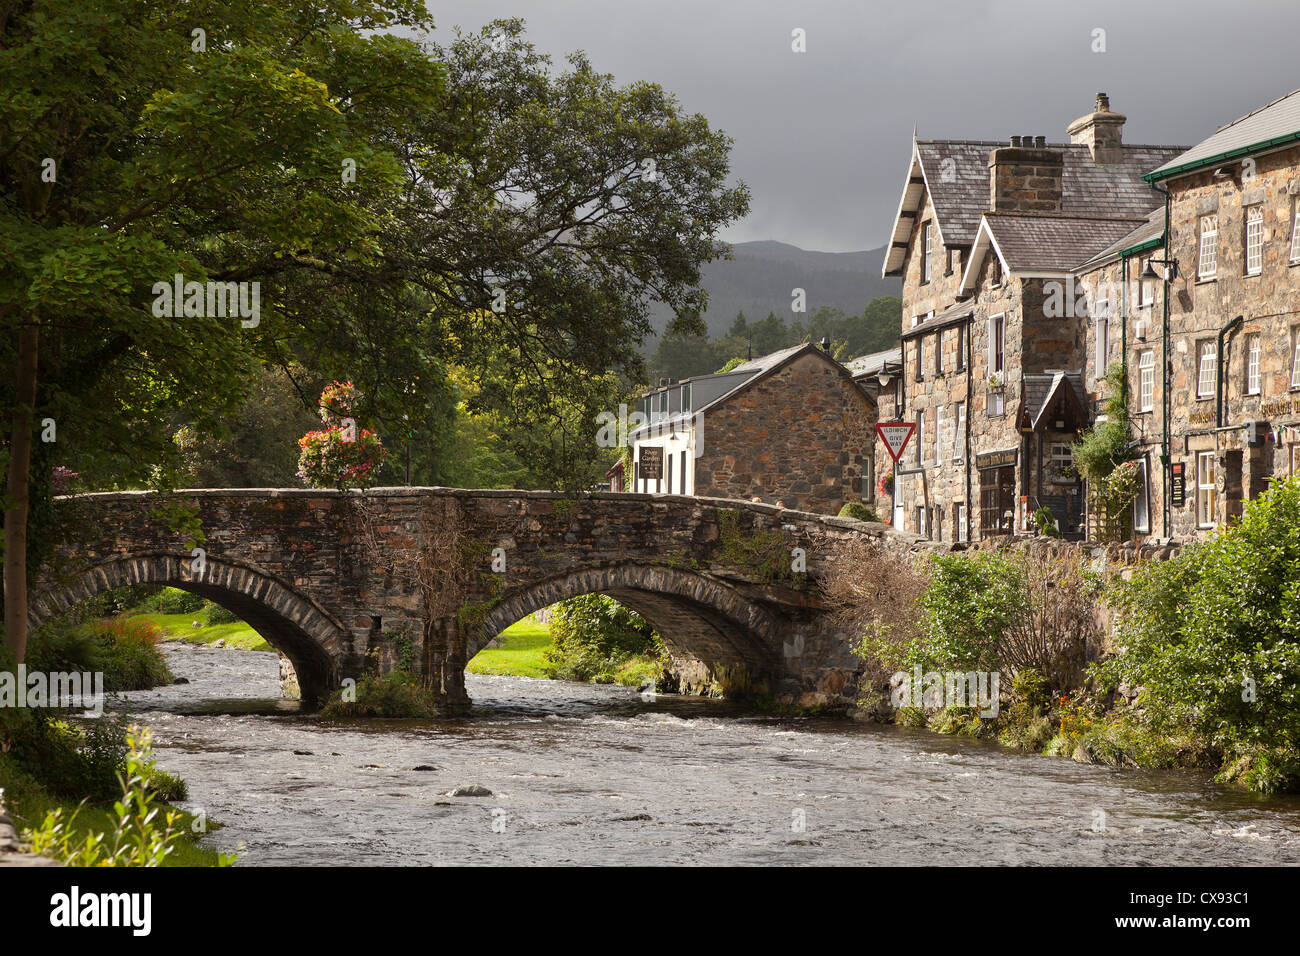 Eine alte Steinbrücke mit zwei Bögen in Beddgelert Dorfzentrum, Wales. Stockfoto